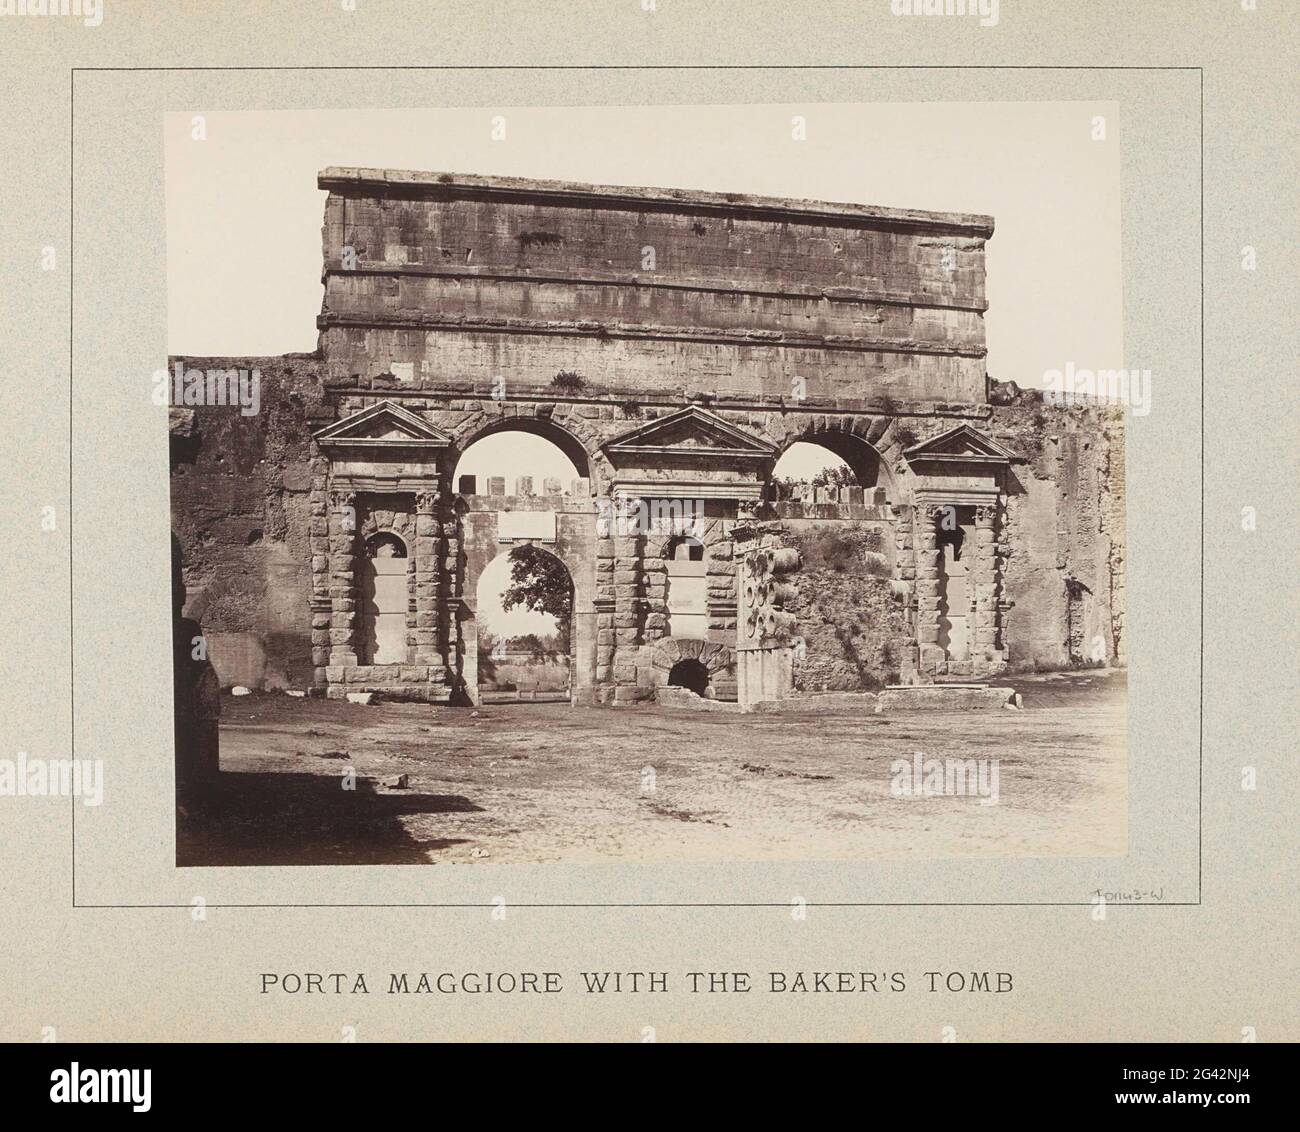 Porta Maggiore à Rome avec le tombeau des Eurysses ; Porta Maggiore avec le tombeau du Baker. Partie d'un album photo avec des enregistrements de sites et d'œuvres d'art à Rome. Banque D'Images